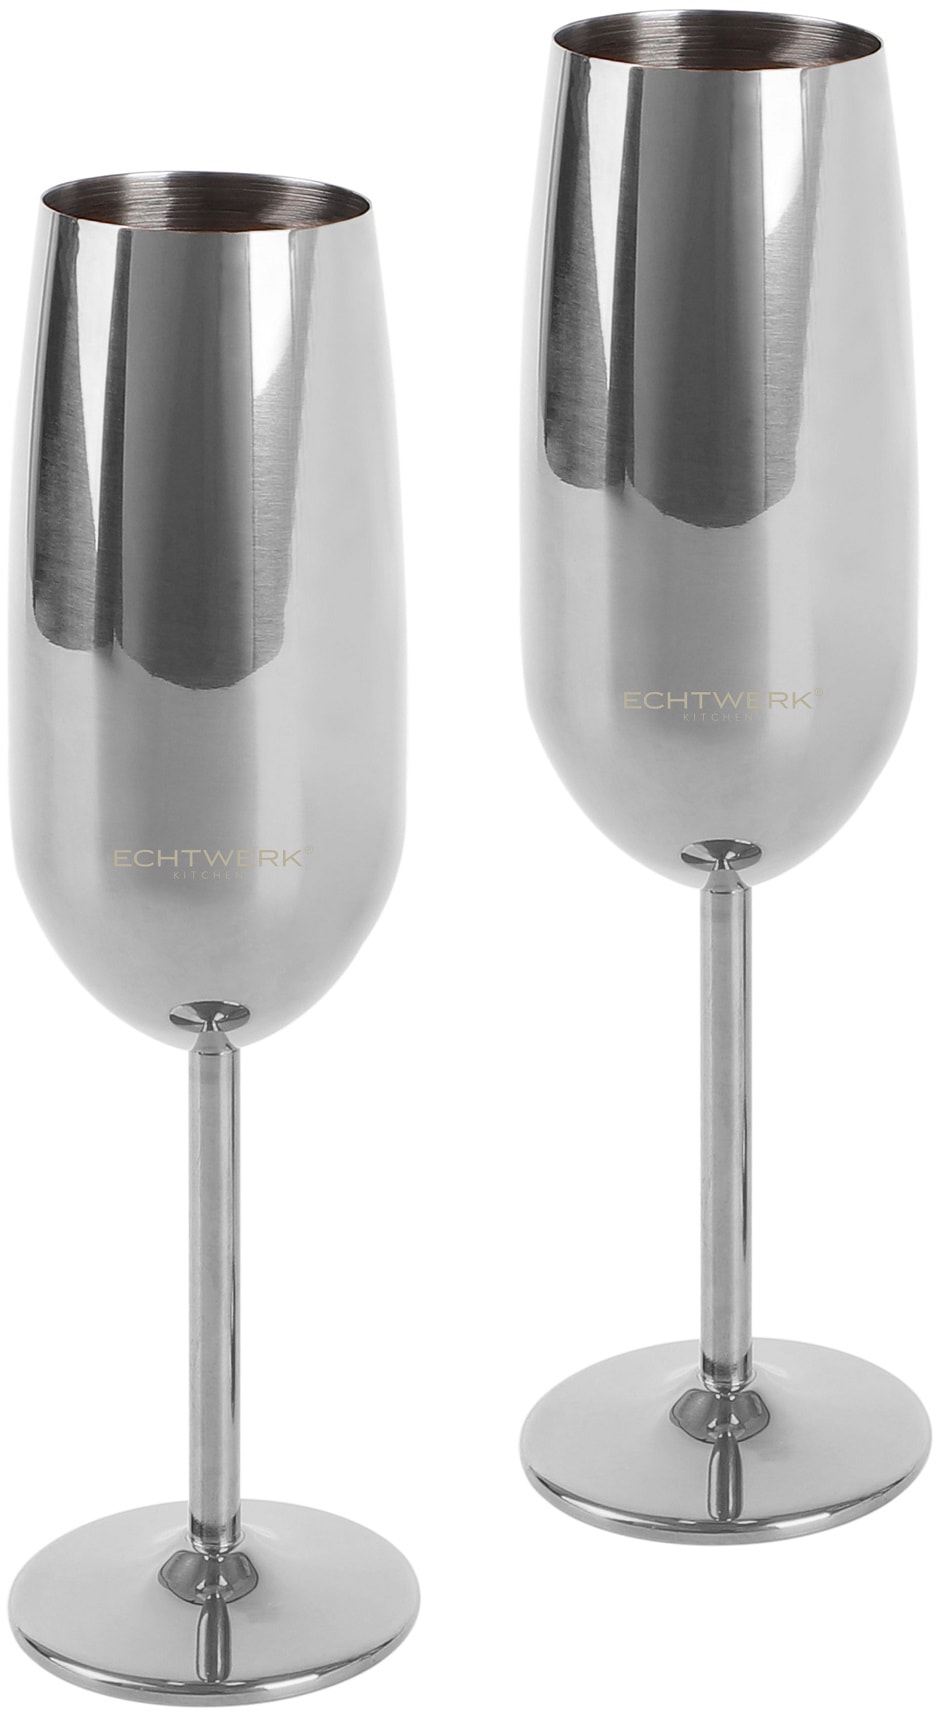 ECHTWERK Champagnerglas, (Set, 2 tlg.), aus Edelstahl, 250 ml silberfarben Champagnerglas Sektgläser Champagnergläser Gläser Glaswaren Haushaltswaren